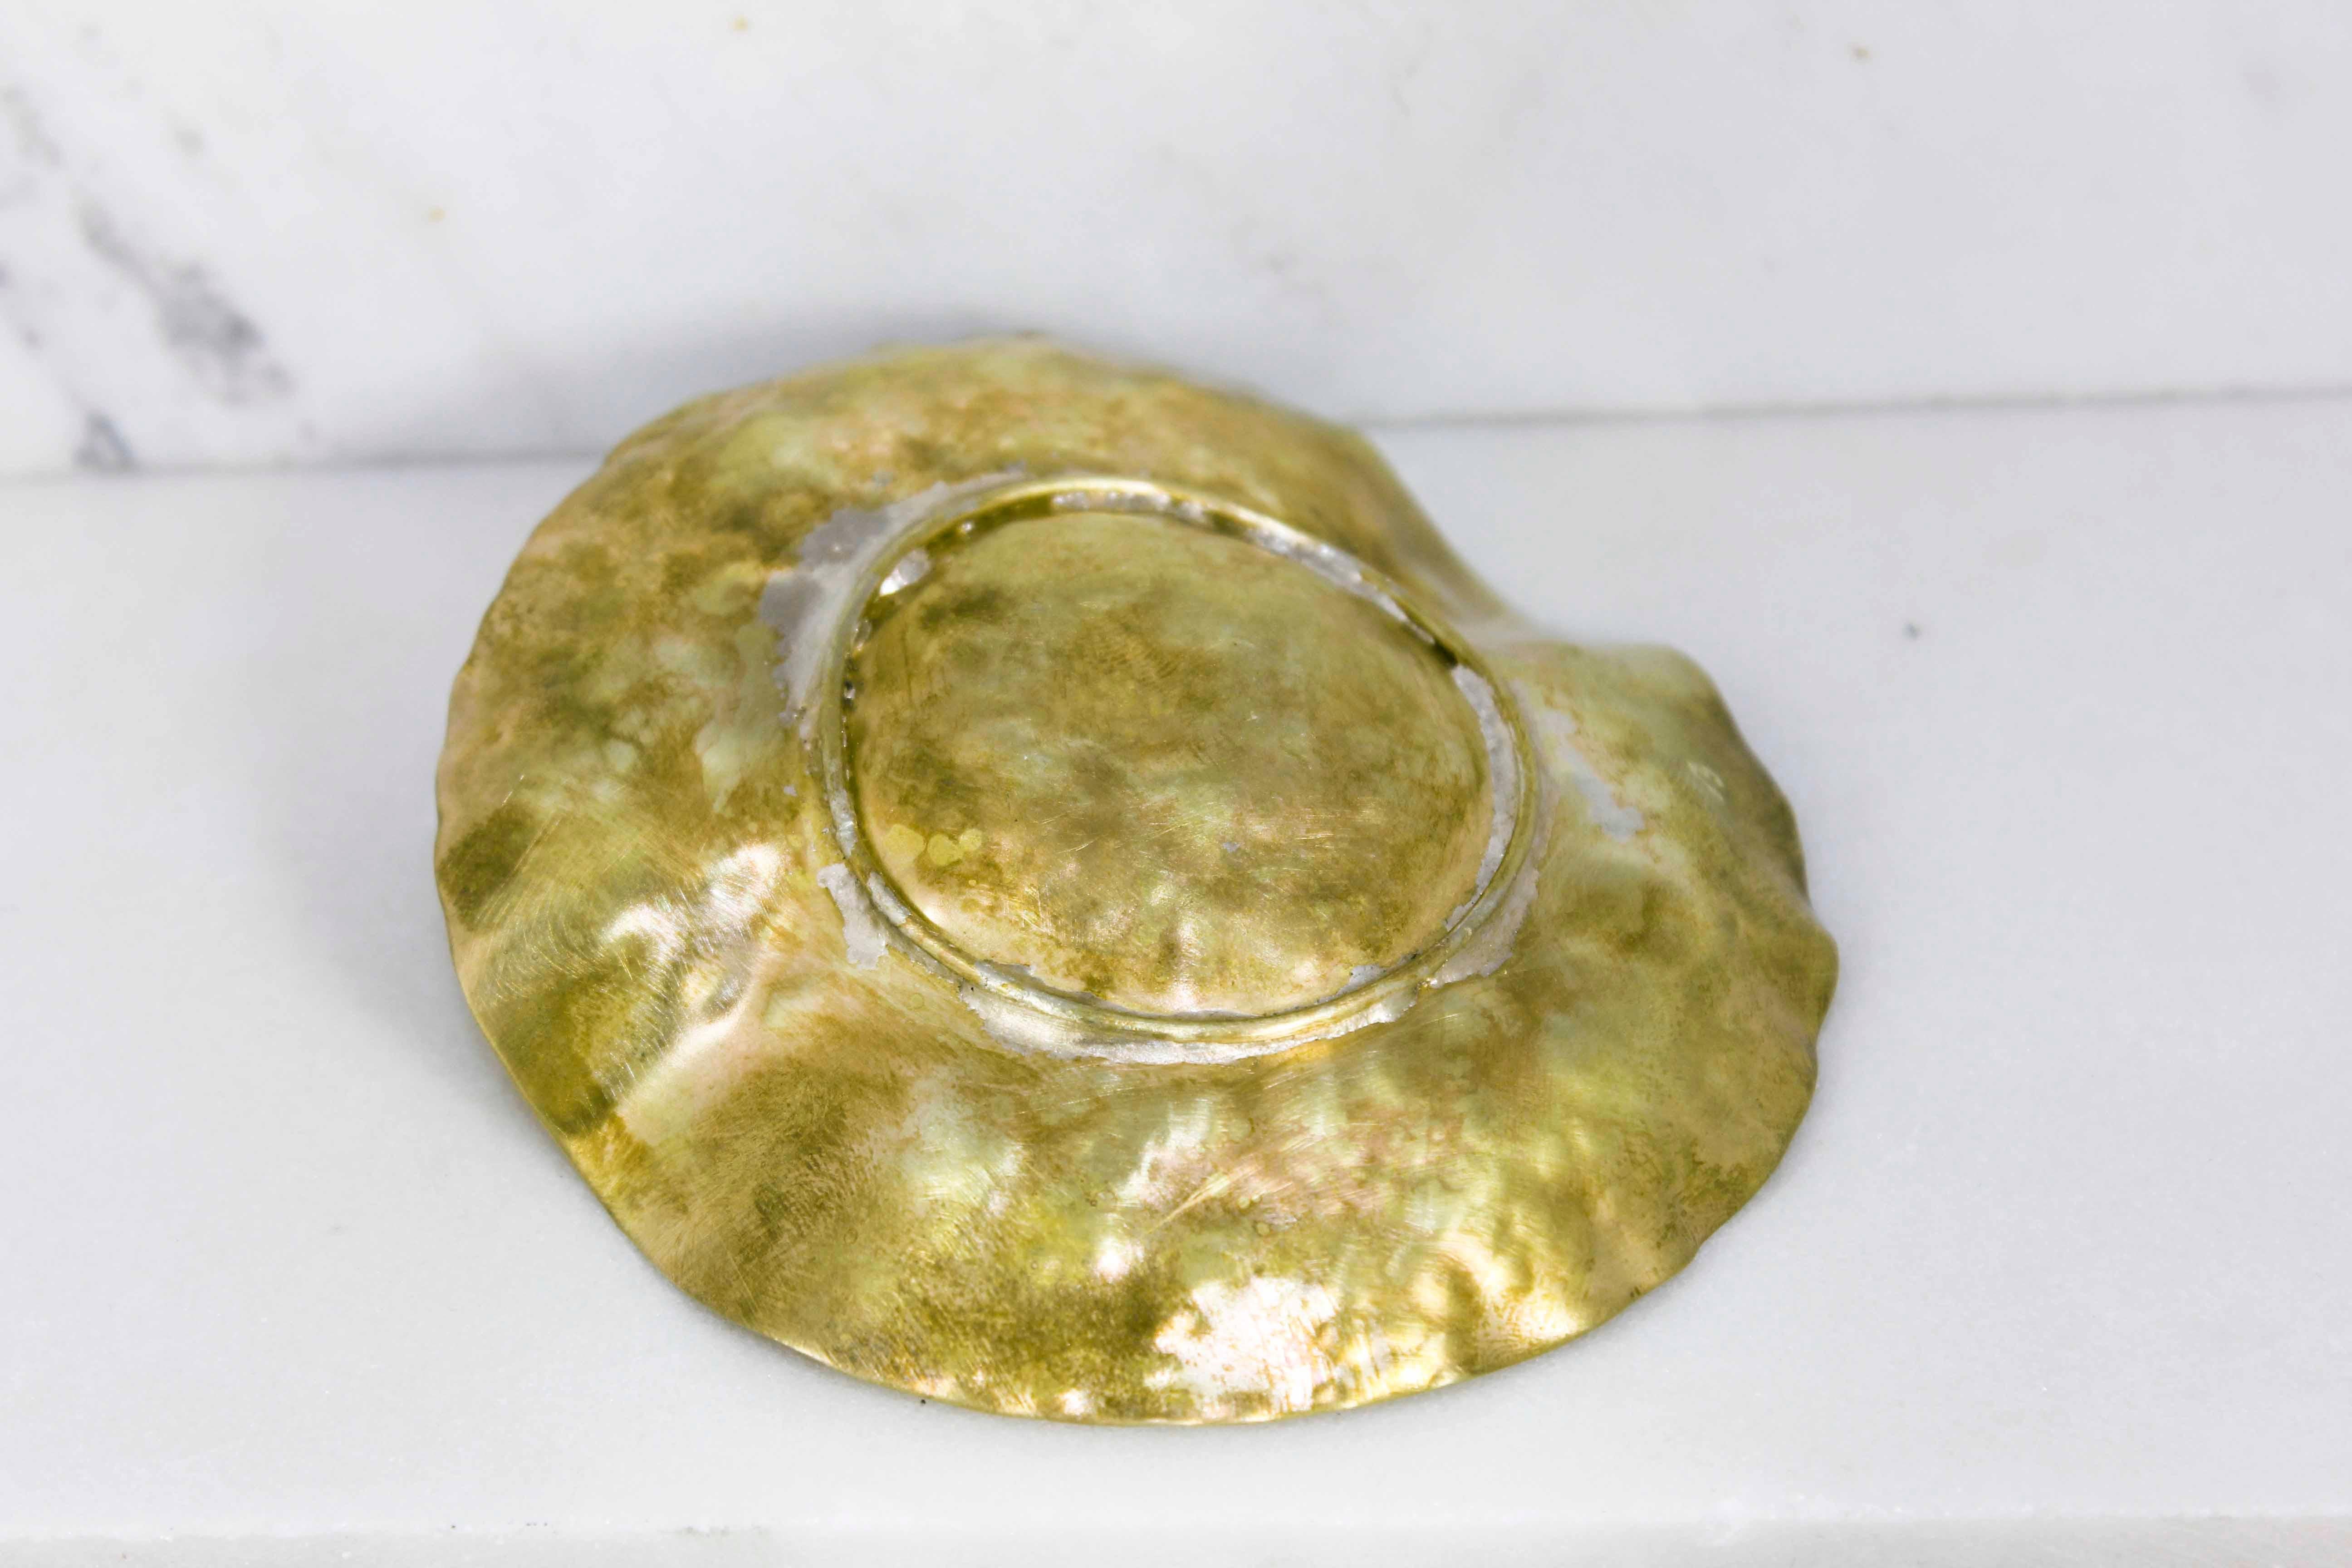 Der Aschenbecher von Cocotte ist aus Bronze und gehört zu der Serie Object, die ich kürzlich in meine Sammlungen aufgenommen habe.

Bitte beachten Sie, dass die Bilder auch als Referenz verwendet werden können. Aufgrund des Herstellungsprozesses